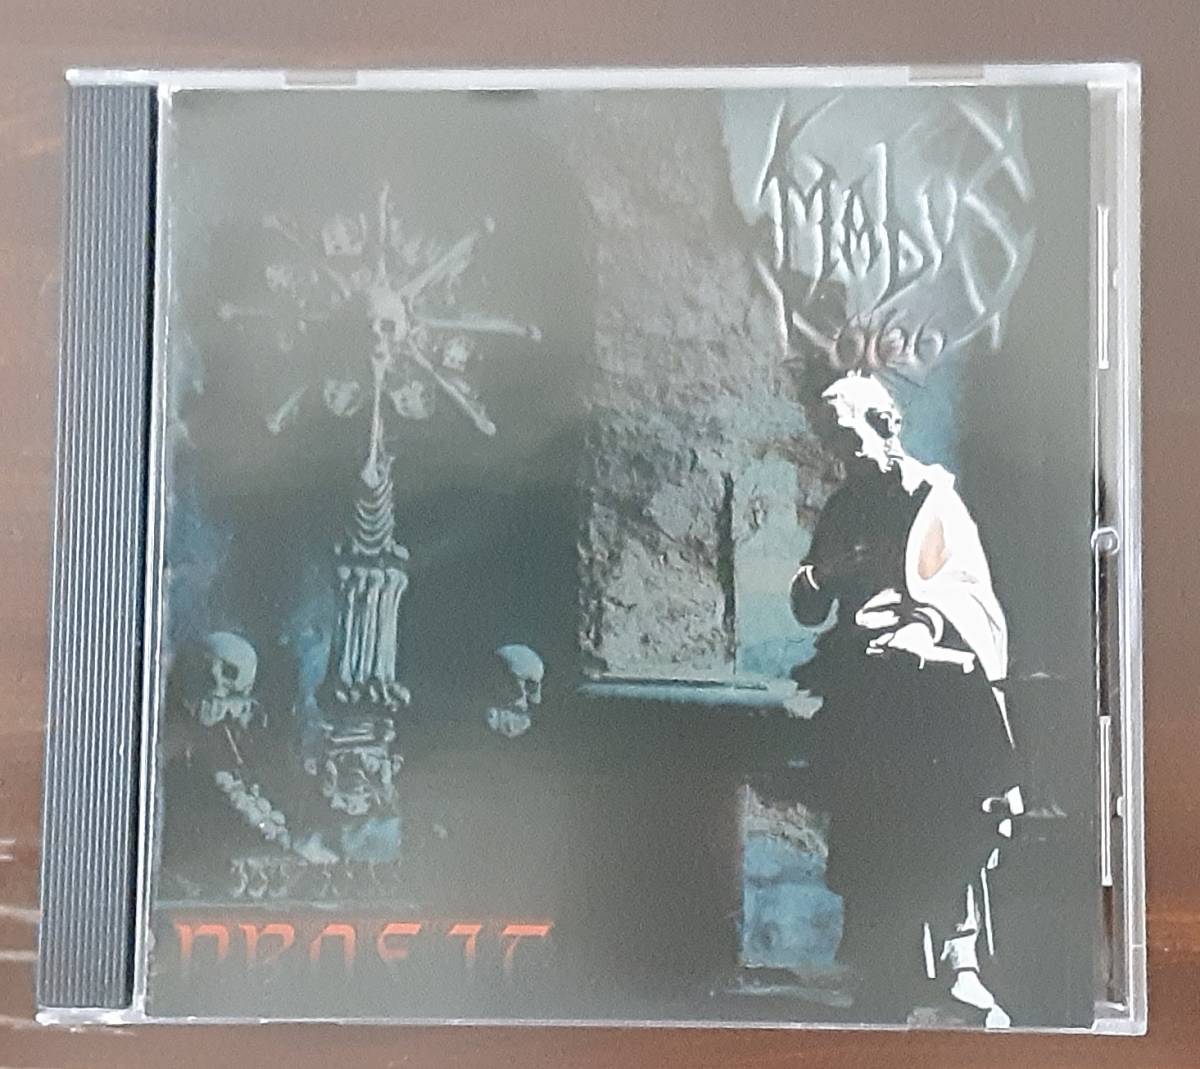 【MABUS 666/PROFIT/欧州/アイルランド出身/2002年作品/1stフル・アルバム/デス・ブラック系/状態良好/レア盤/中古品】_画像1